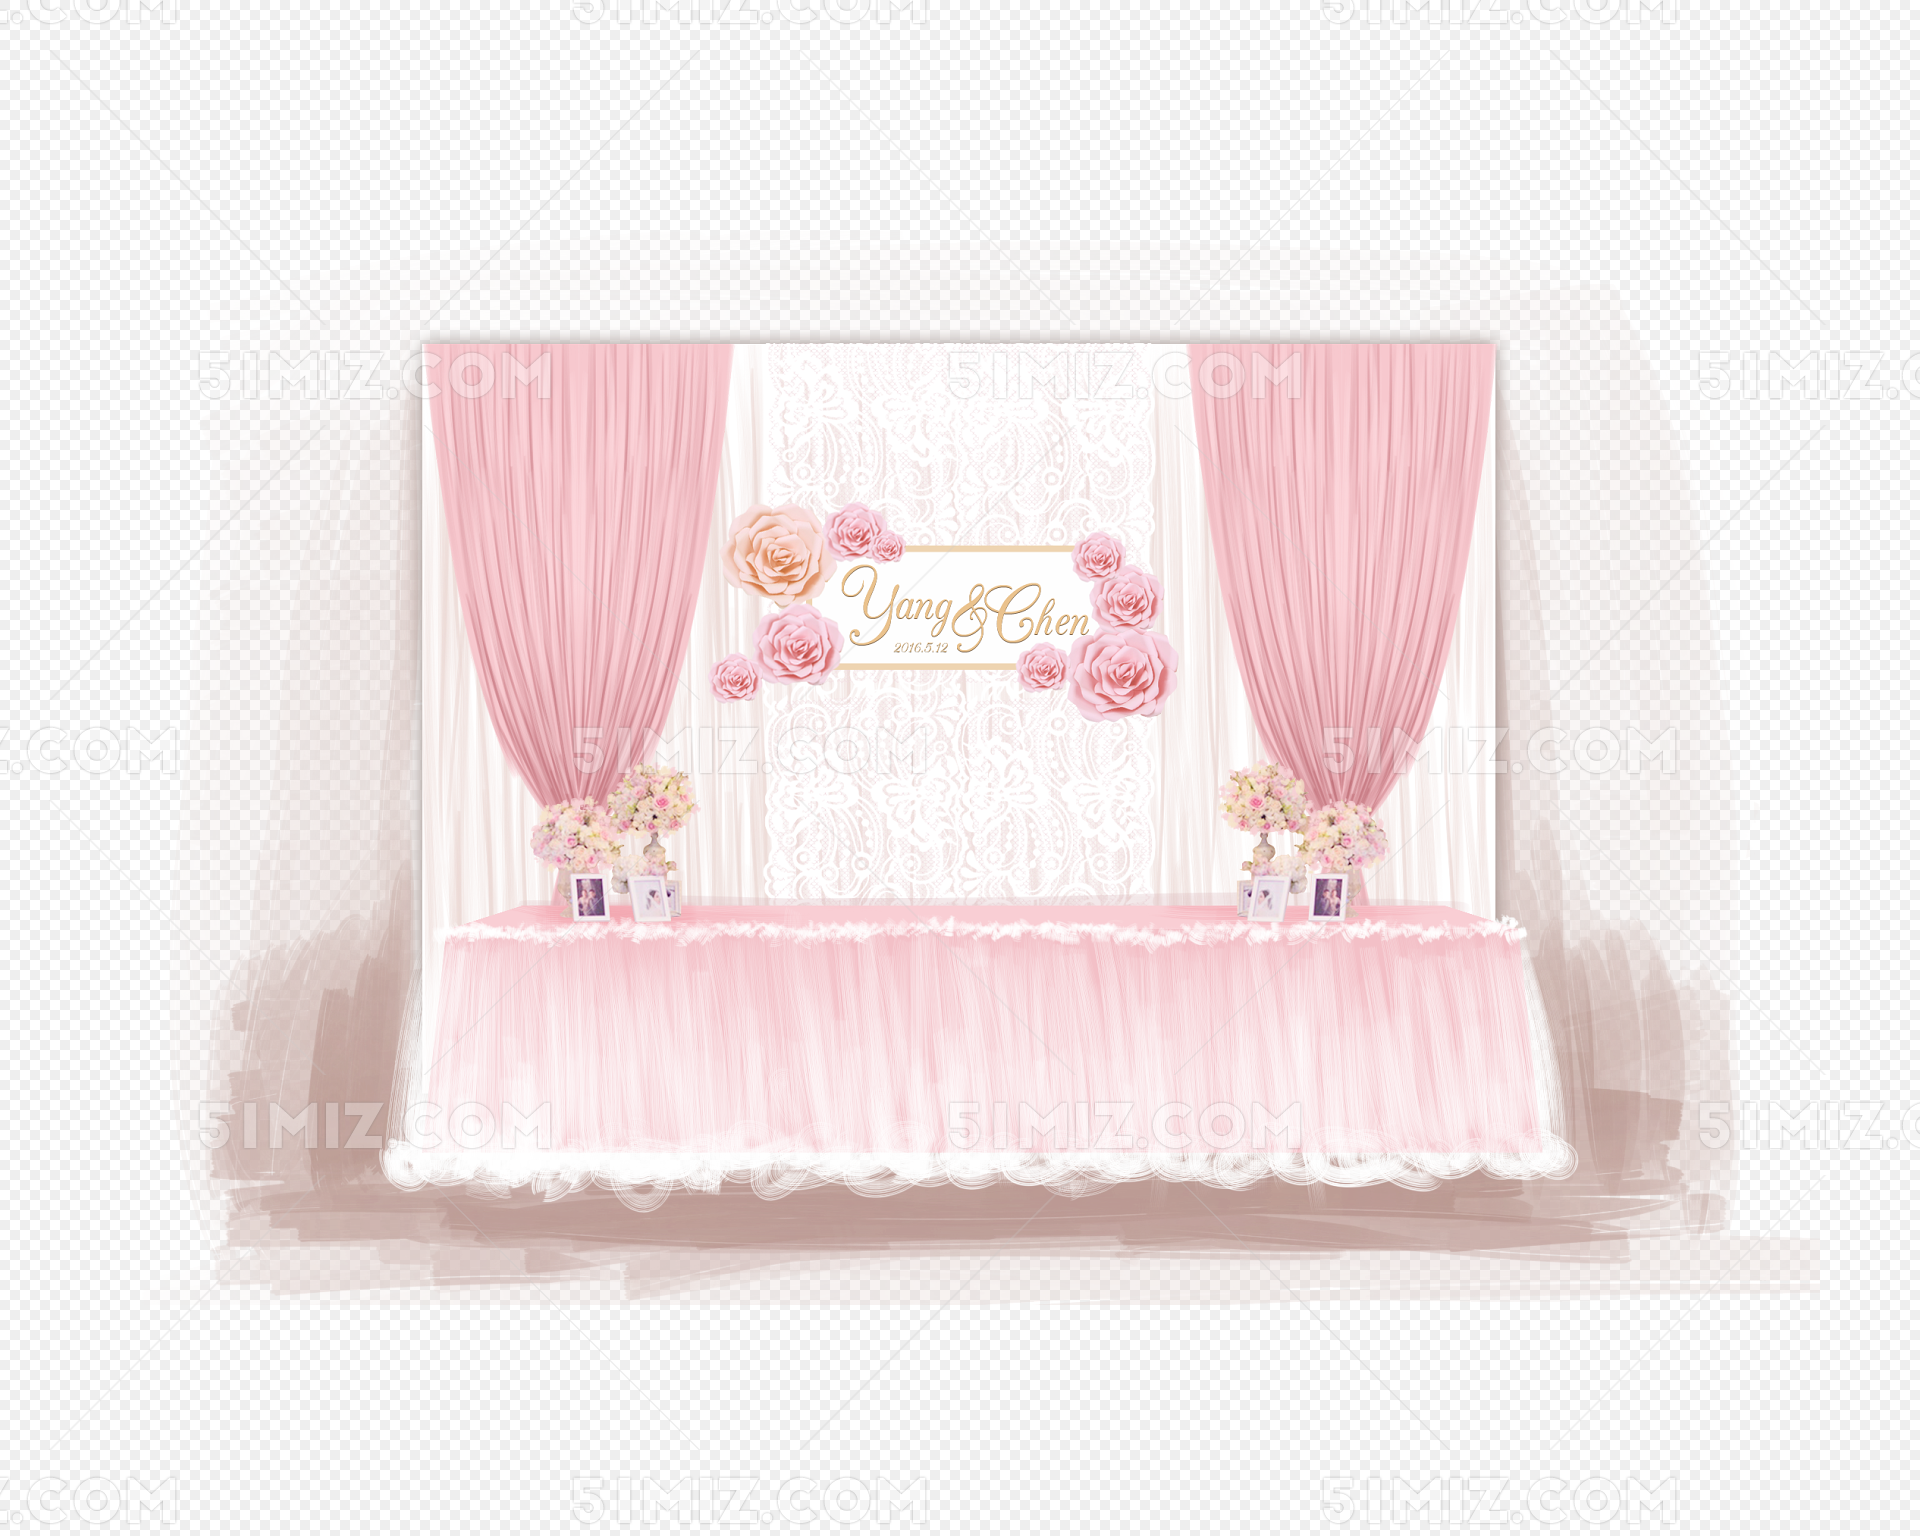 粉色婚礼 - 主题婚礼 - 婚礼图片 - 婚礼风尚